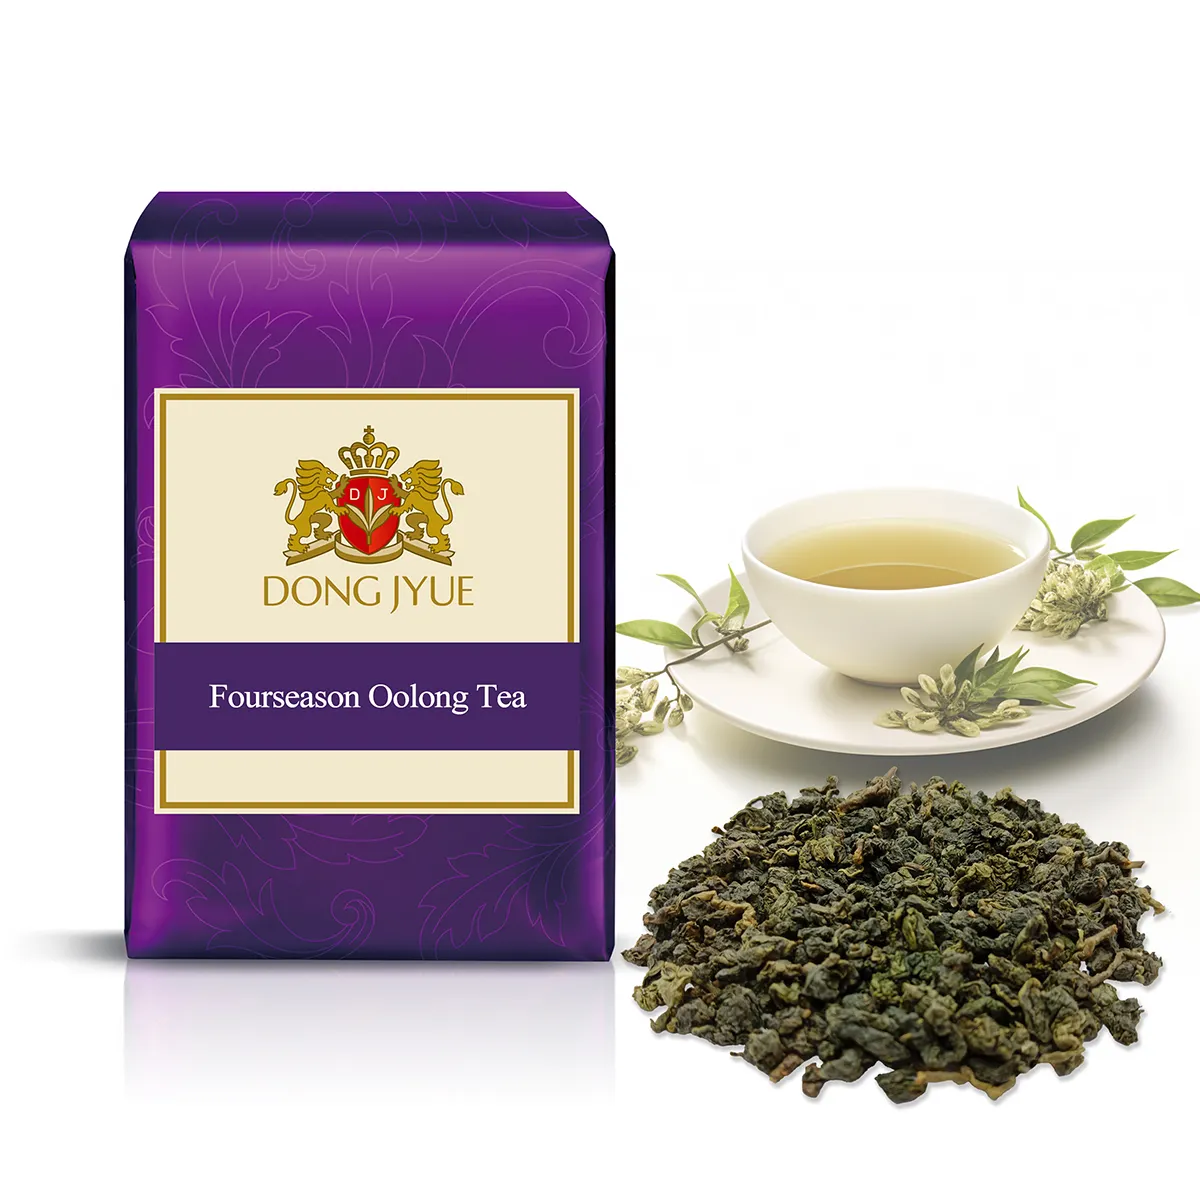 Fourseason Oolong Tea Commercial Tea